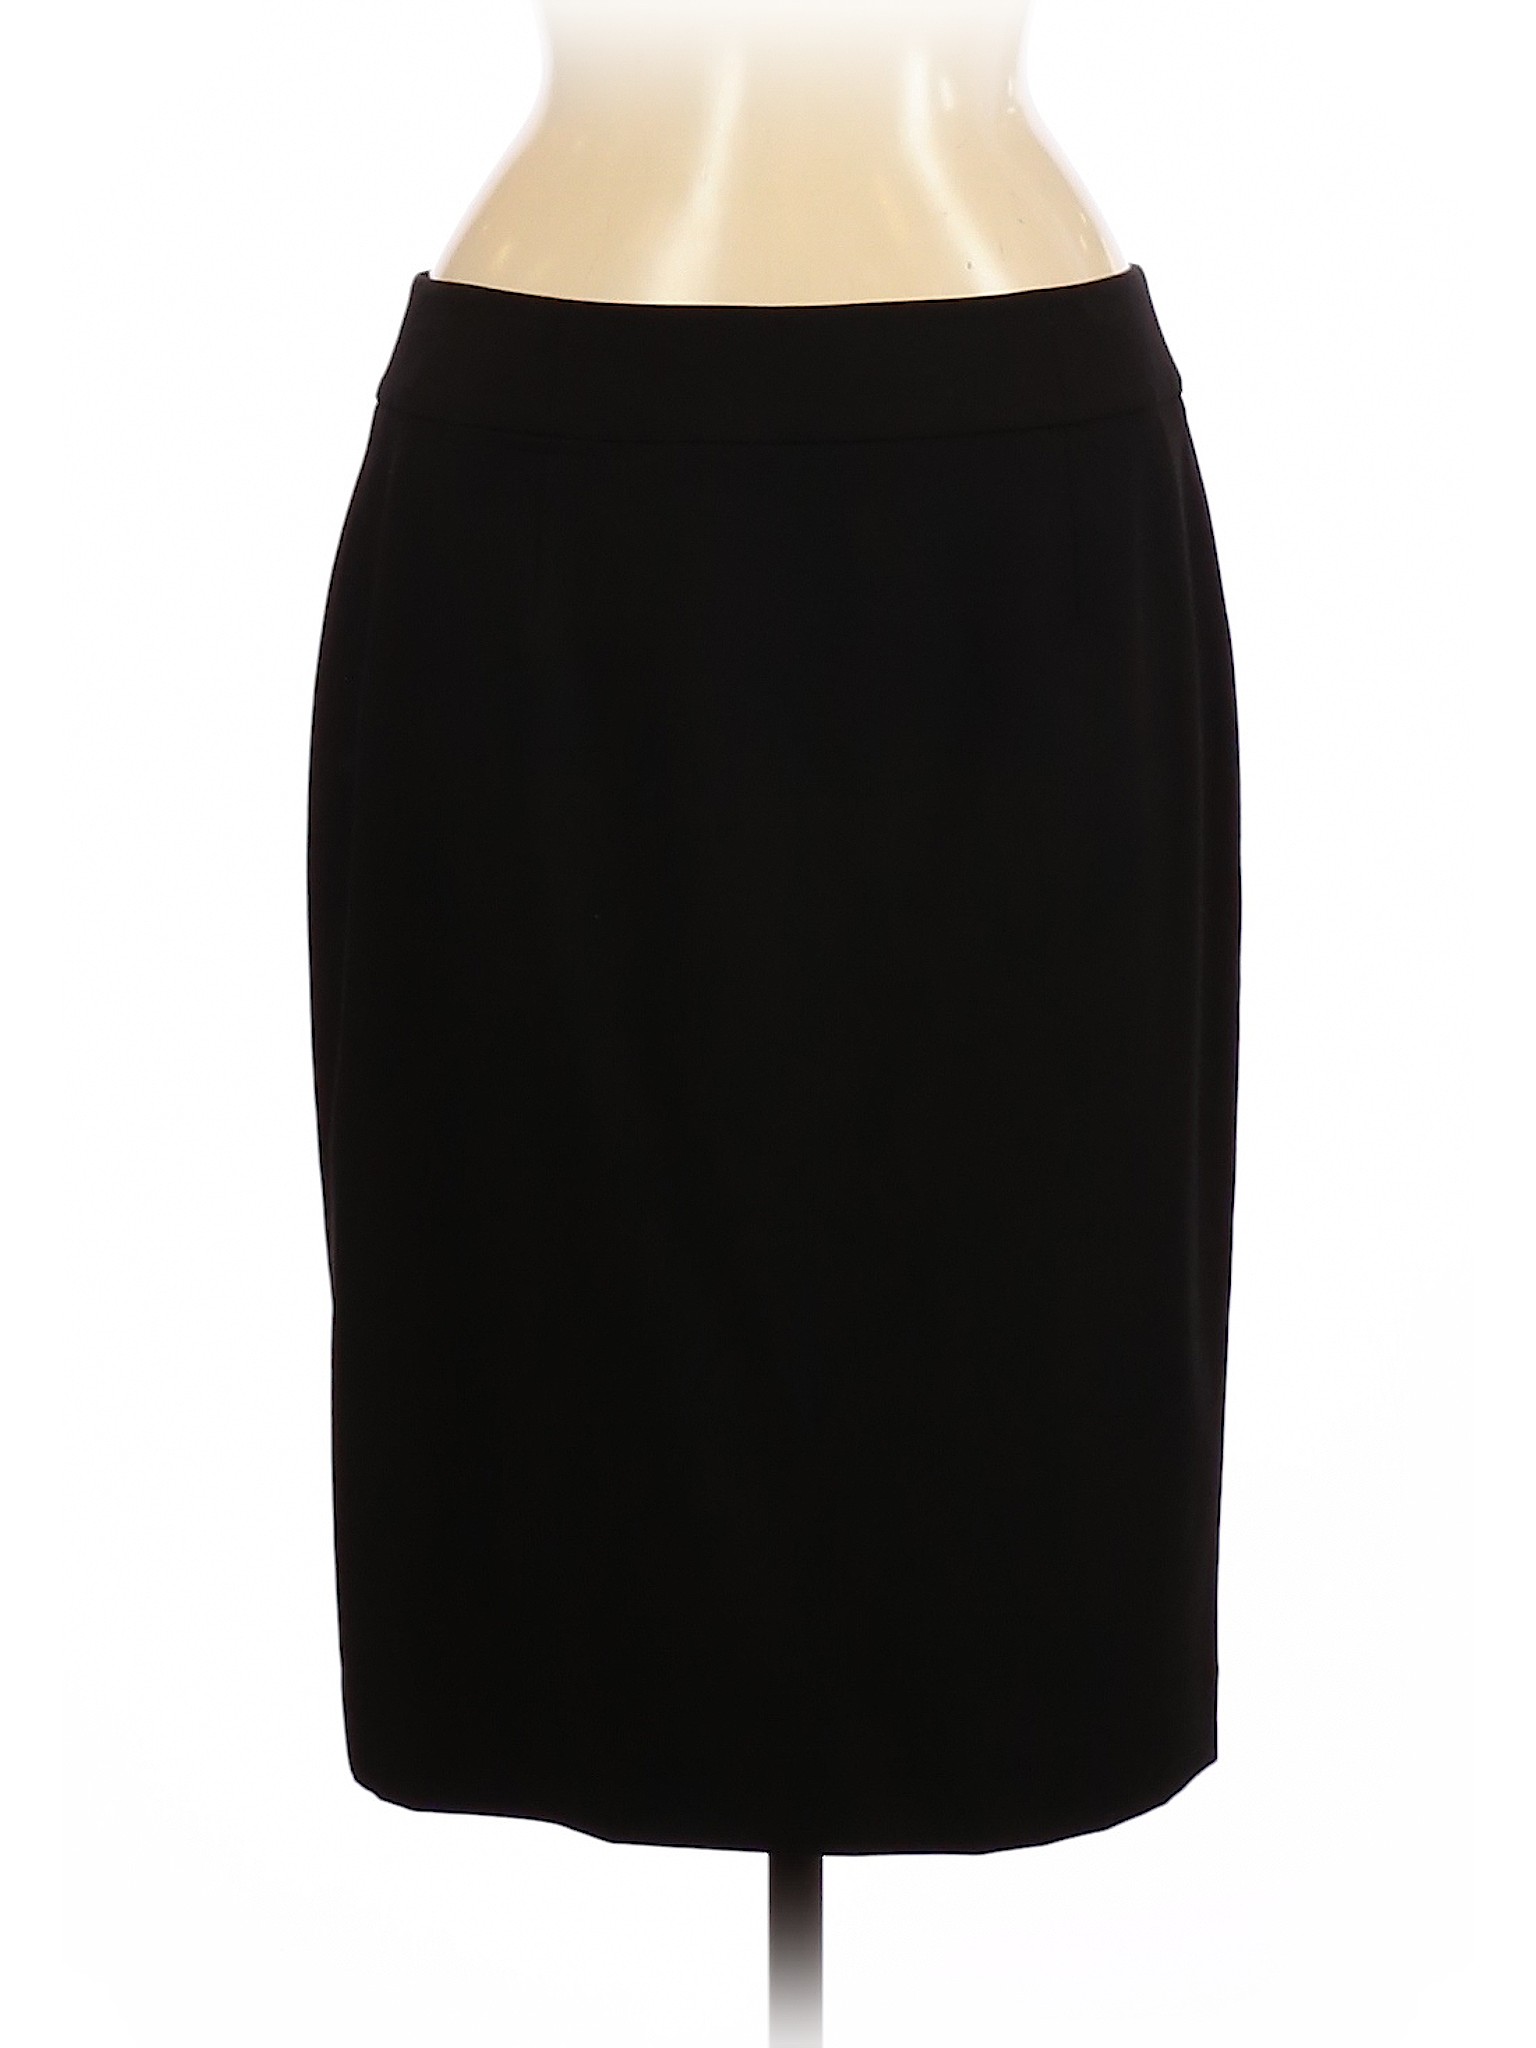 Calvin Klein Women Black Formal Skirt 8 | eBay